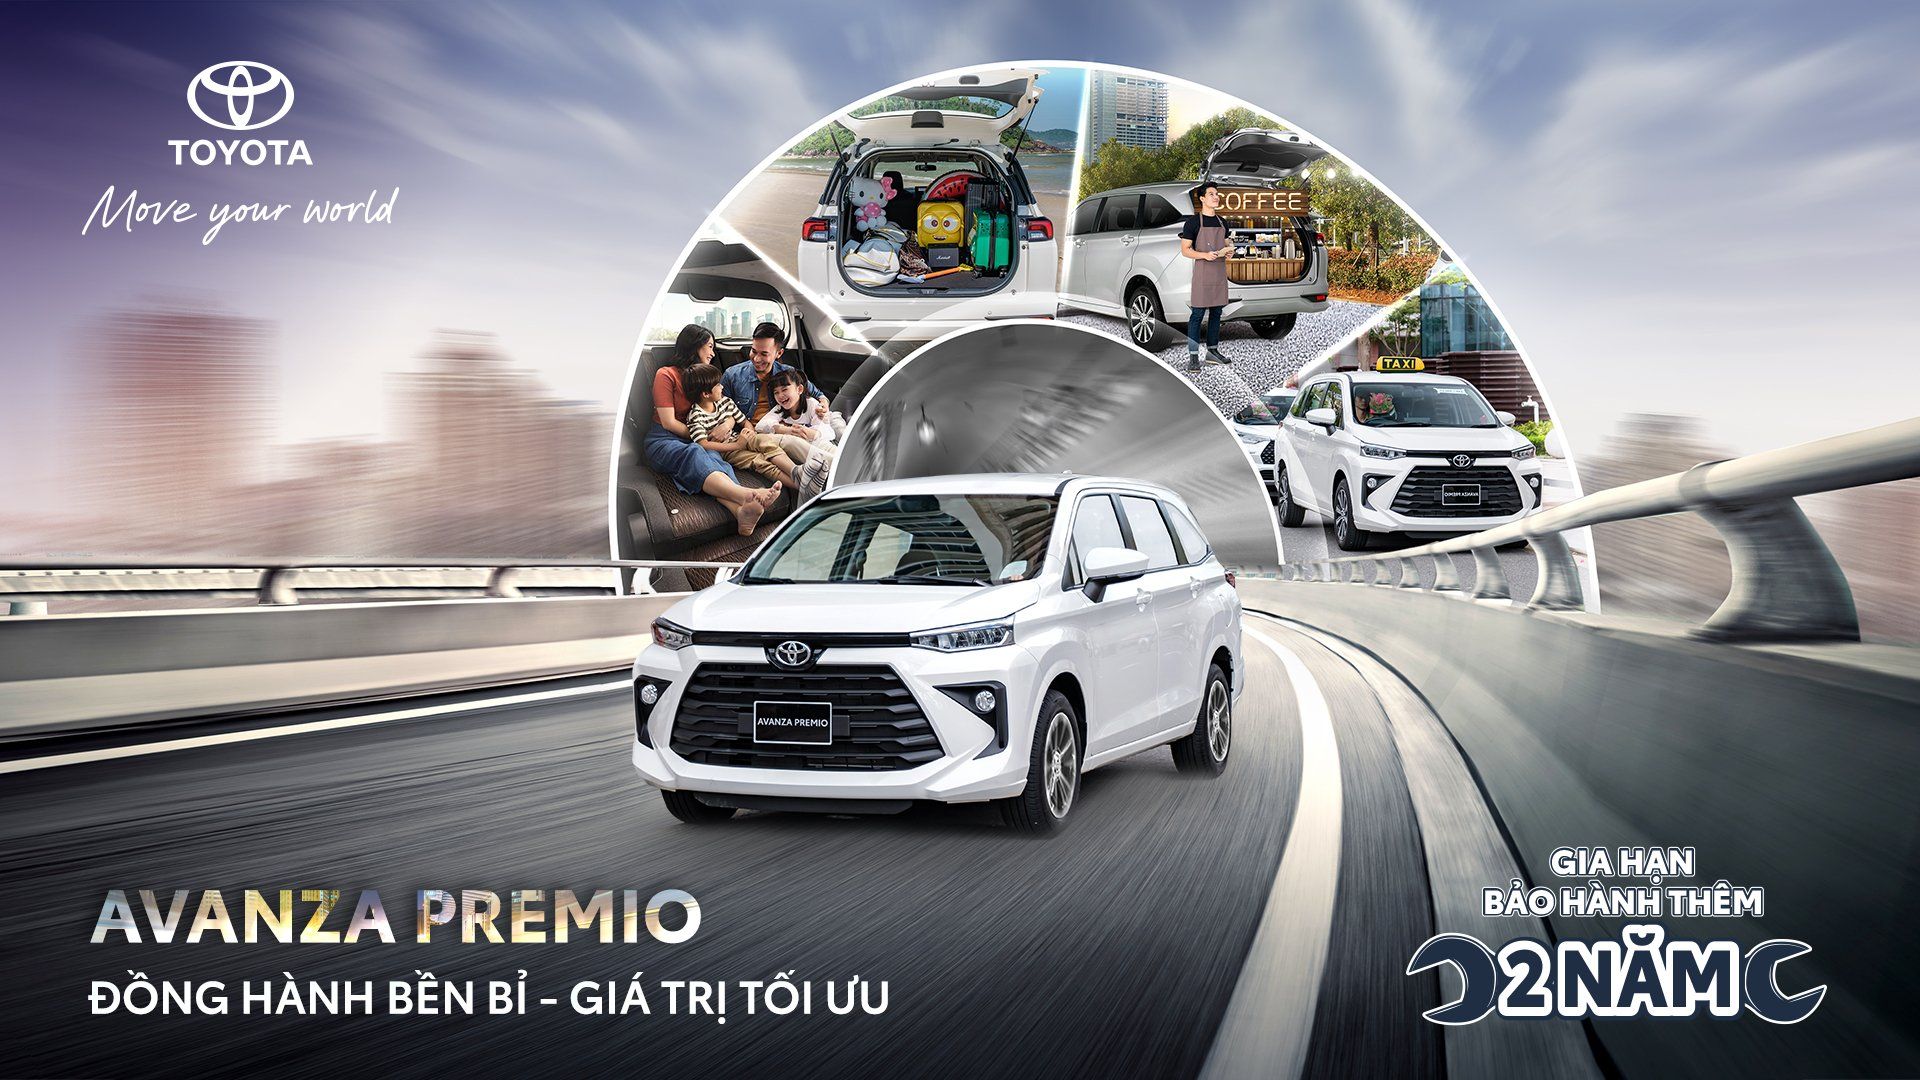 Toyota Việt Nam - Nỗ lực nâng cao năng lực sản xuất trong nước